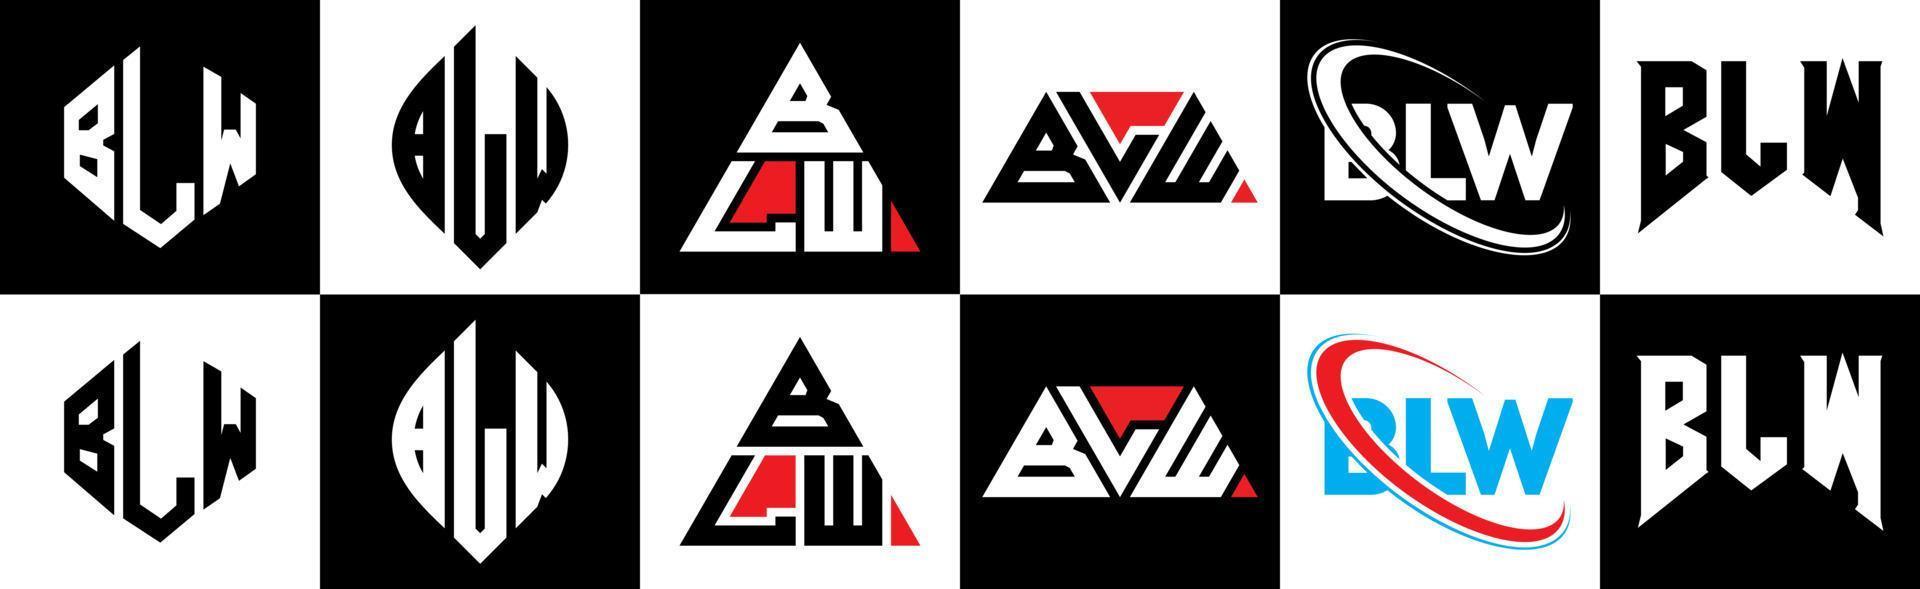 blw-Buchstaben-Logo-Design in sechs Stilen. bw polygon, kreis, dreieck, hexagon, flacher und einfacher stil mit schwarz-weißem buchstabenlogo in einer zeichenfläche. BLW minimalistisches und klassisches Logo vektor